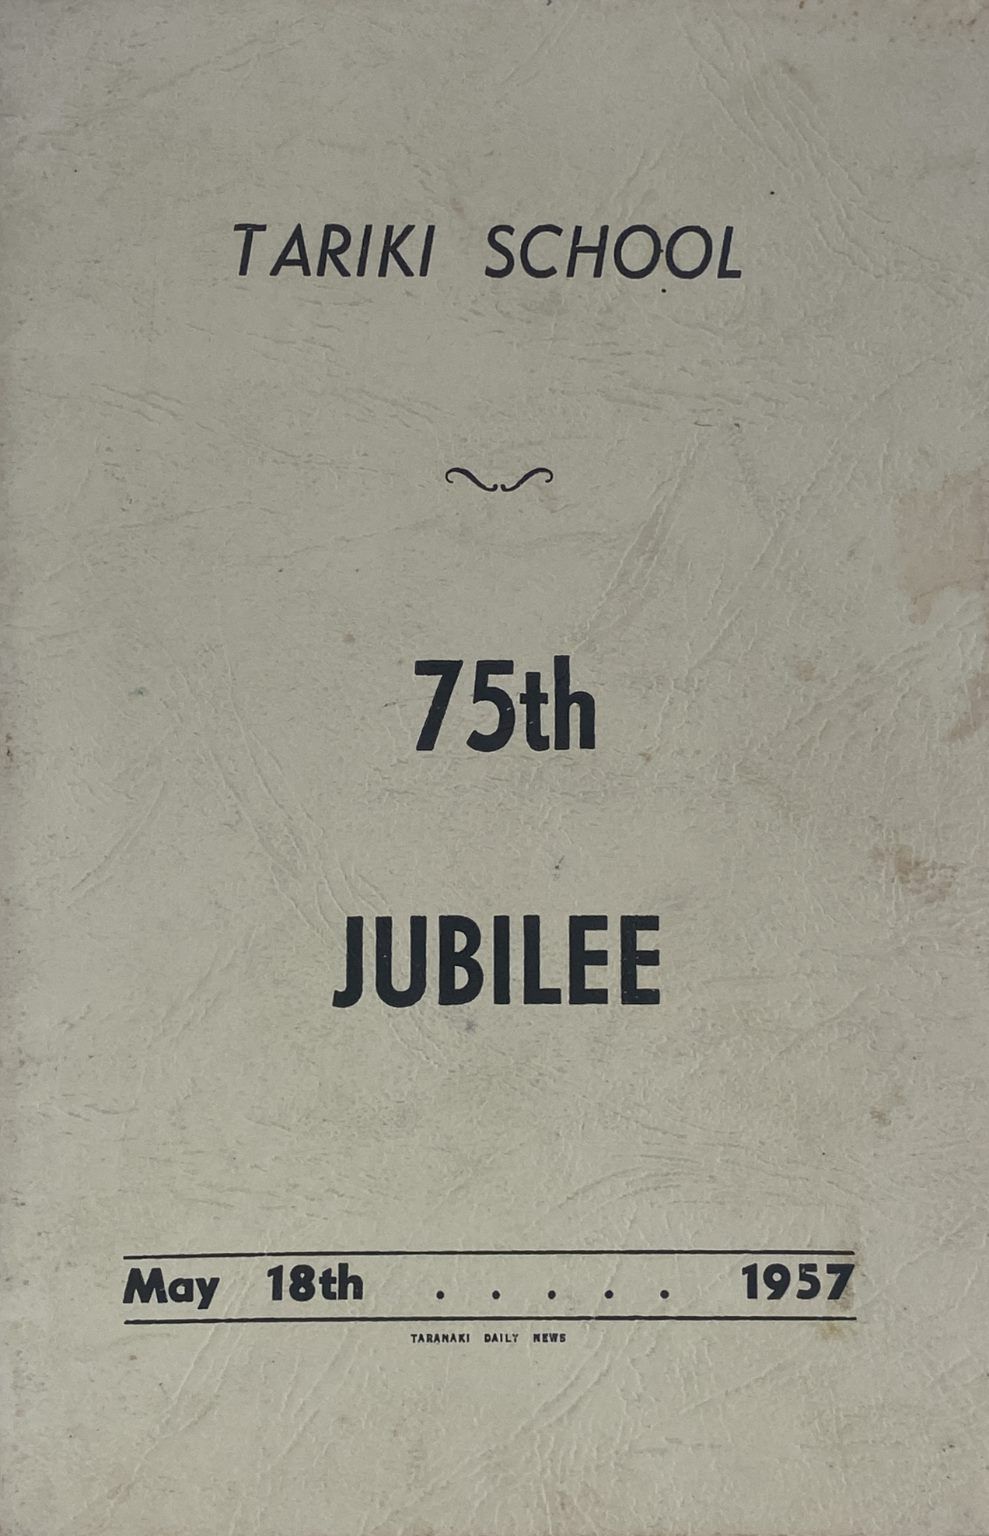 TARIKI SCHOOL: 75th Jubilee